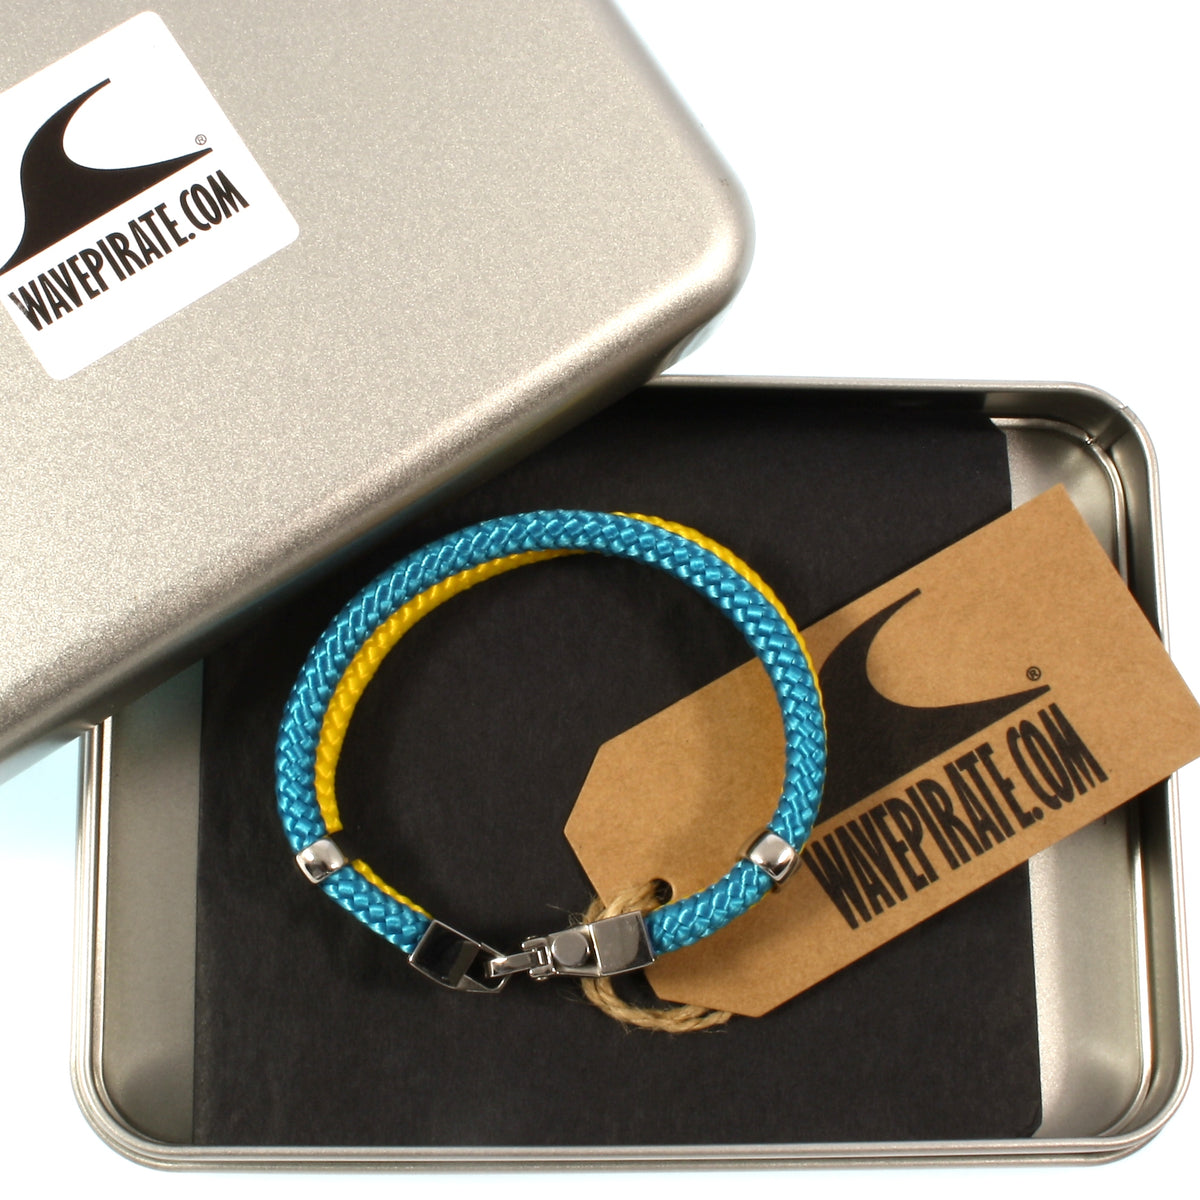 Herren-Segeltau-Armband-Turn-blau-gelb-geflochten-Edelstahlverschluss-geschenkbox-wavepirate-shop-st